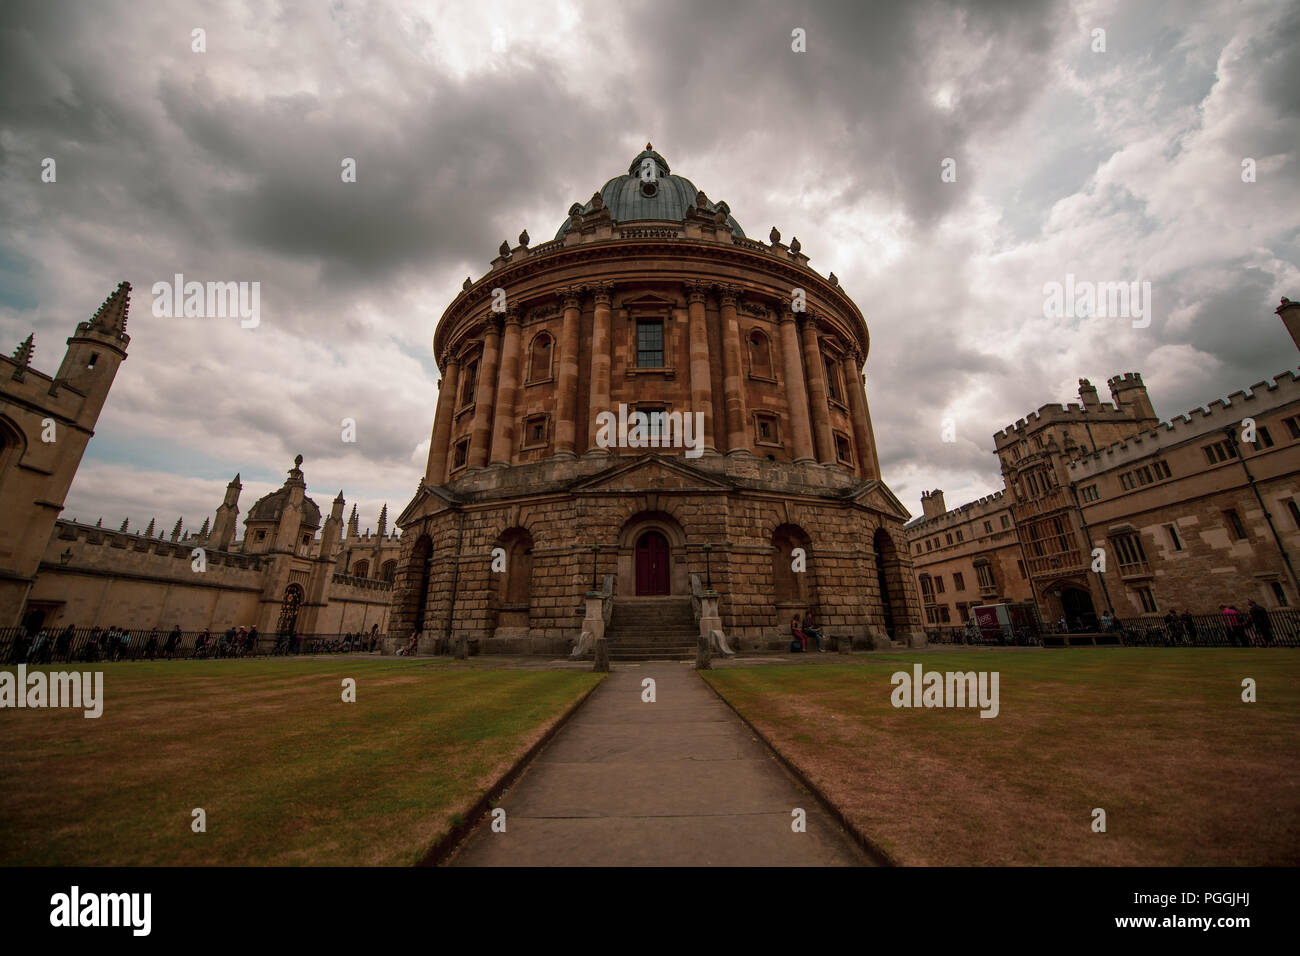 La Radcliffe Camera, parte della biblioteca Bodleian, presso l'Università di Oxford, Inghilterra, con un moody sky, un incredibile pezzo di architettura. Foto Stock